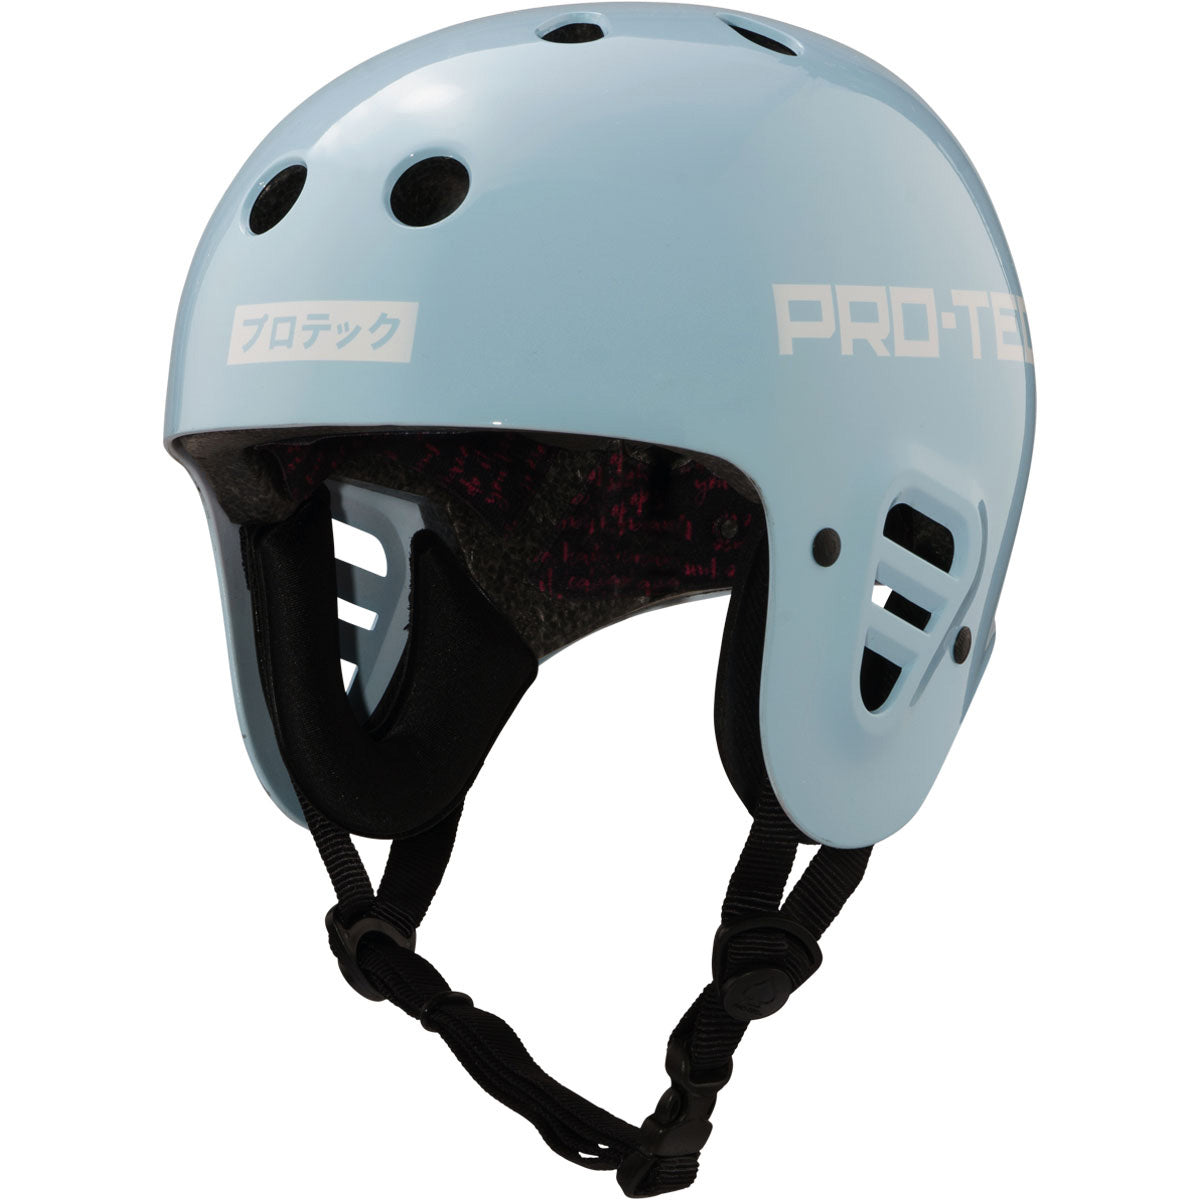 Pro Tec Full Cut Certified Sky Brown Helmet - Blue image 1